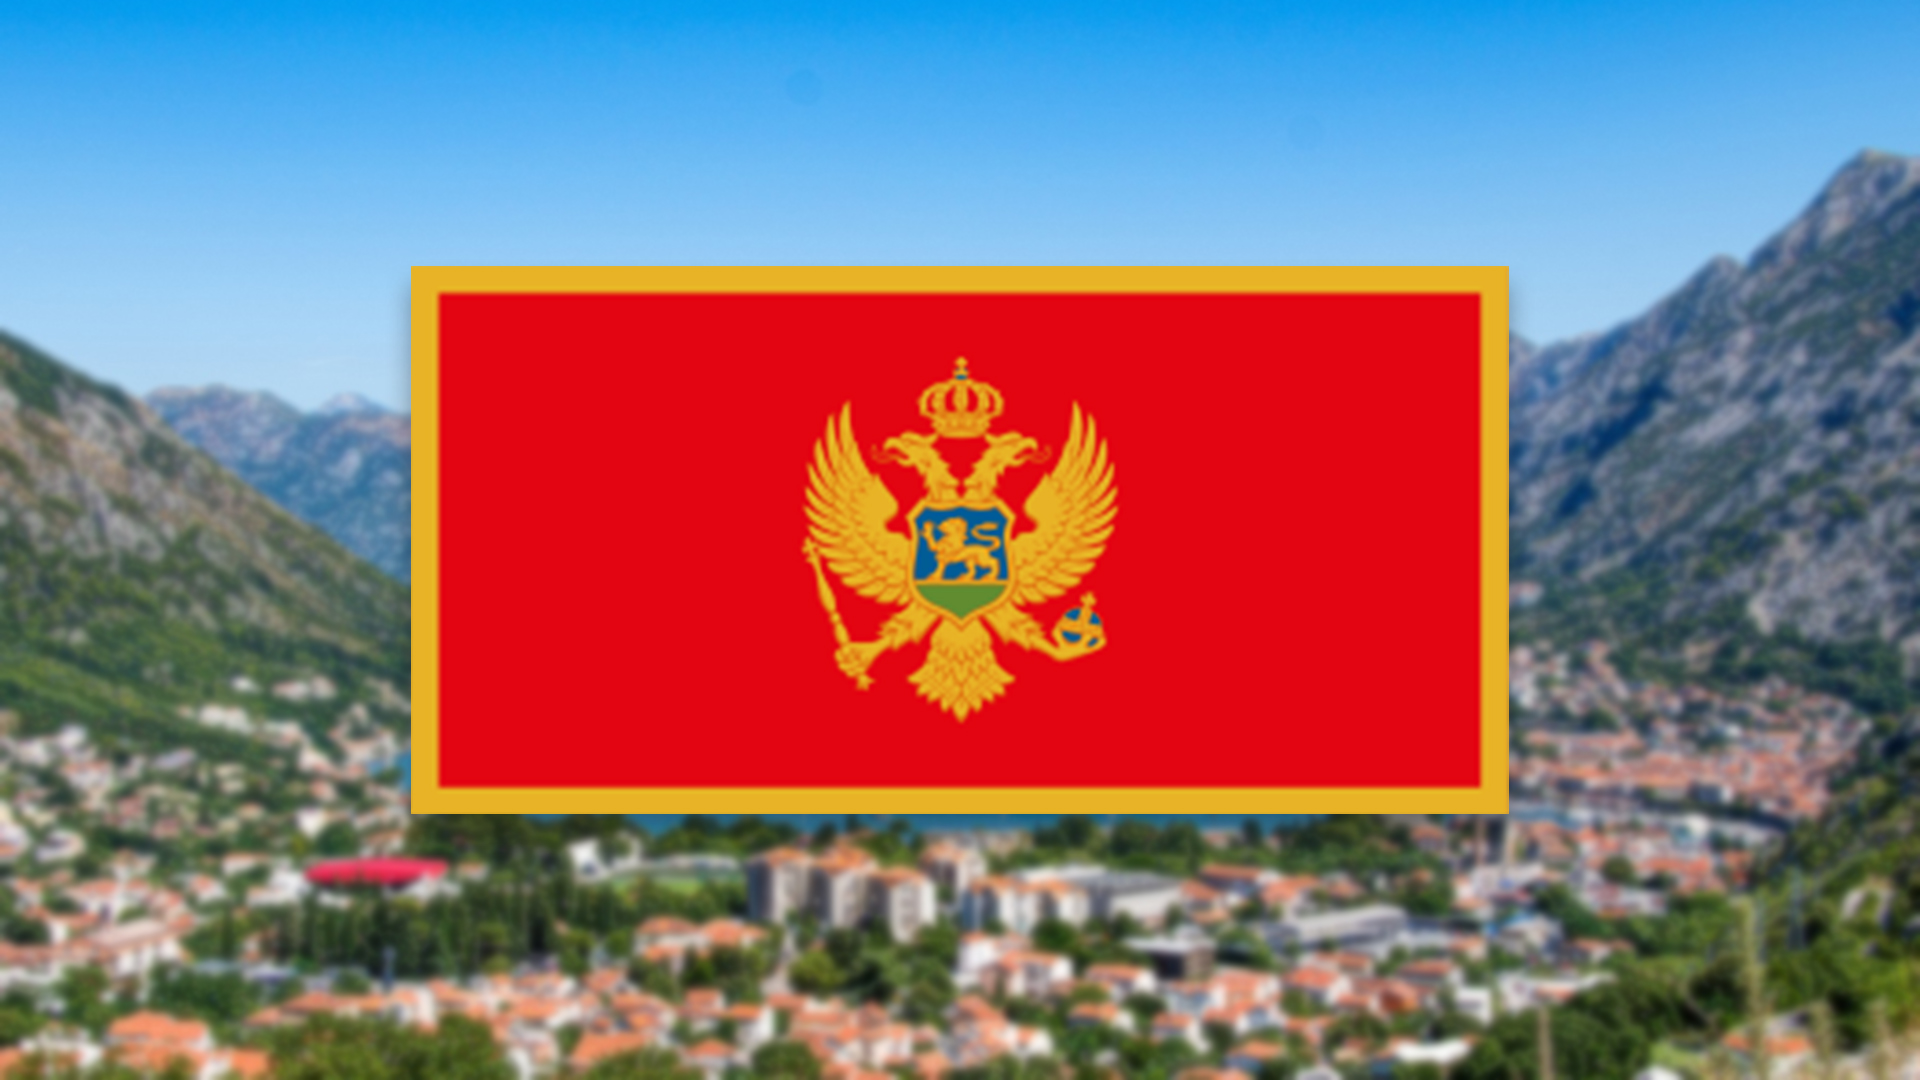 You are currently viewing Auswandern nach Montenegro – unterschätzter Geheimtipp zum Auswandern?